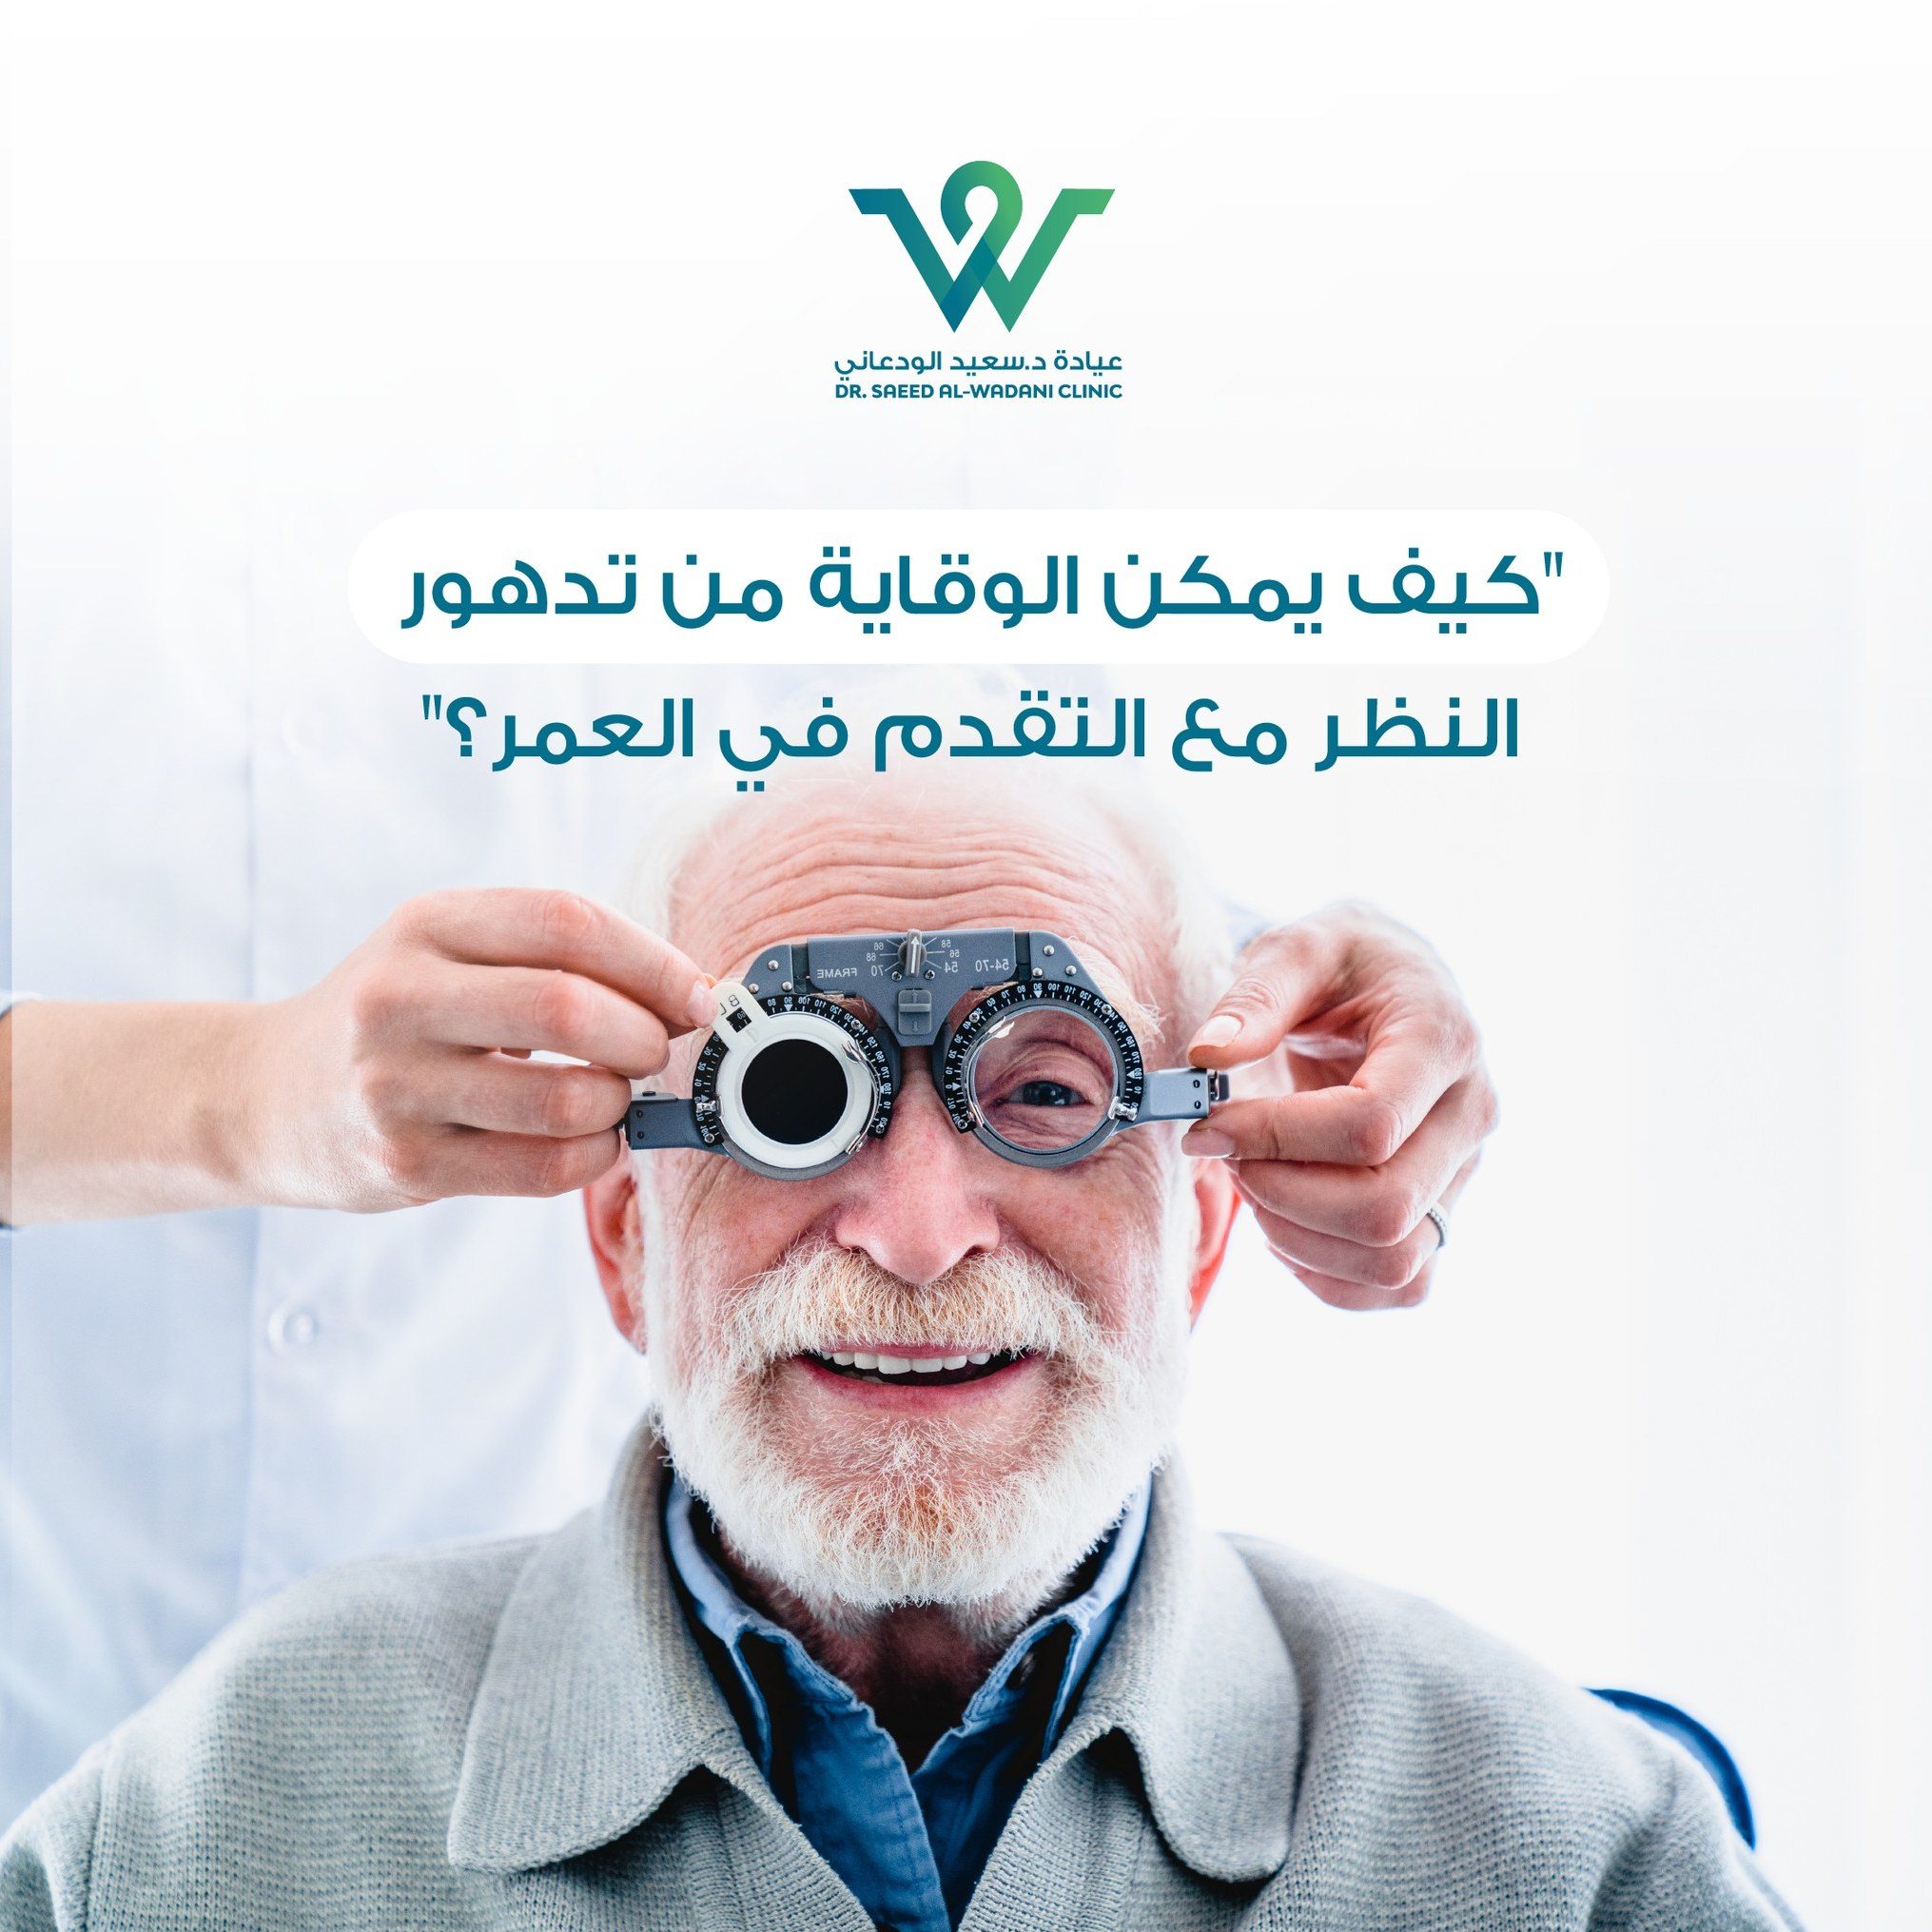 أهمية الوقاية من تدهور البصر مع تقدم العمر، تُعَدُّ أسباب تدهور البصر مع التقدّم في العمر طبيعية بشكل عام، وتشمل عوامل مثل انخفاض كثافة عضلات العين، وفقدان ليونة عدسة العين، وتغيرات في شكل قرنية العين.